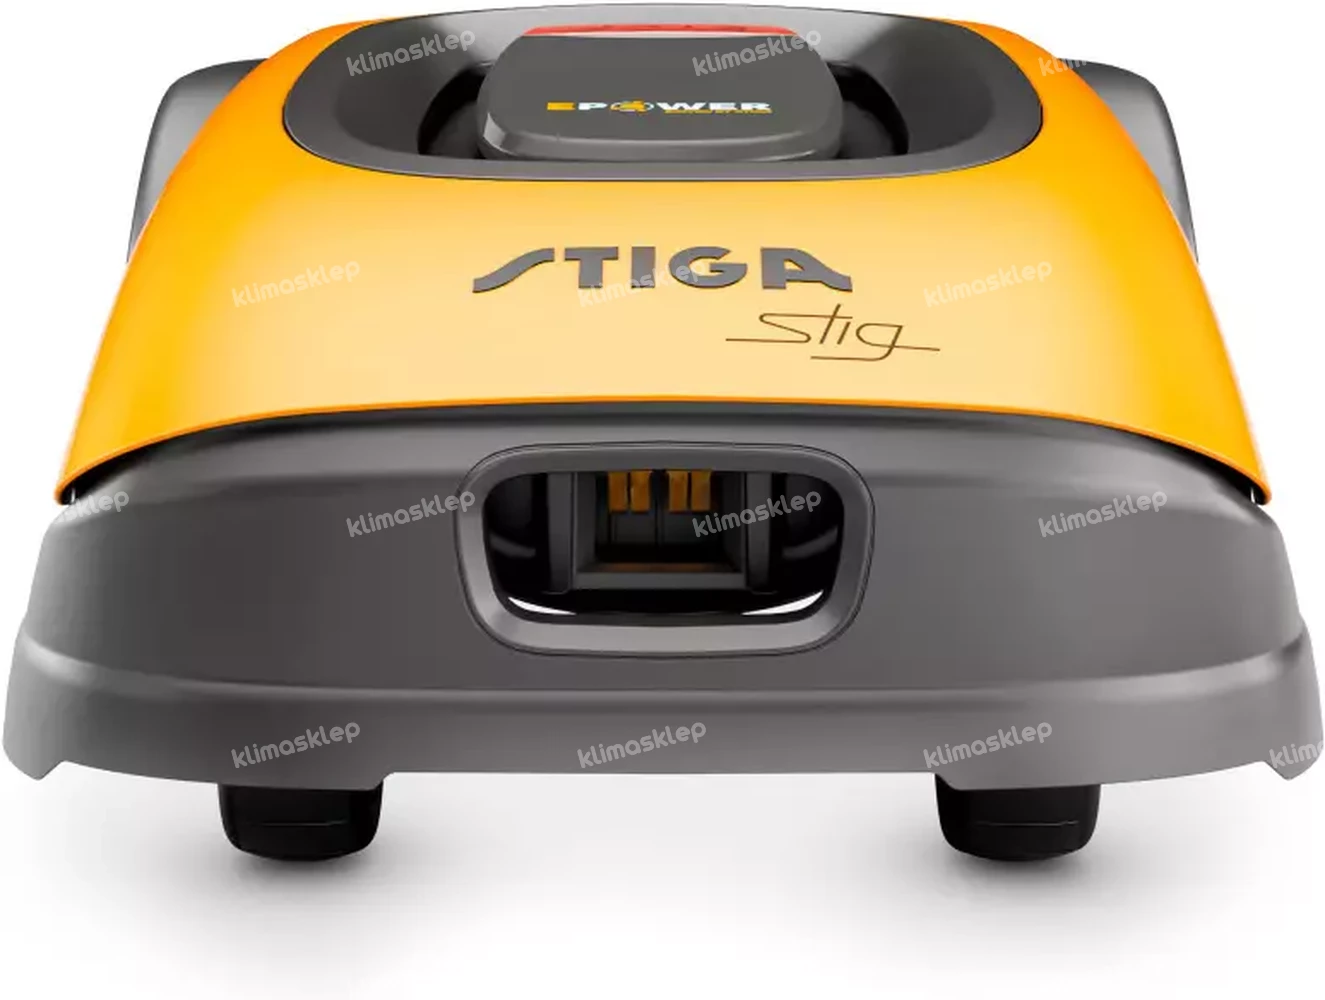 Robot koszący Stiga A 1500 - wirtualne wyznaczanie granic